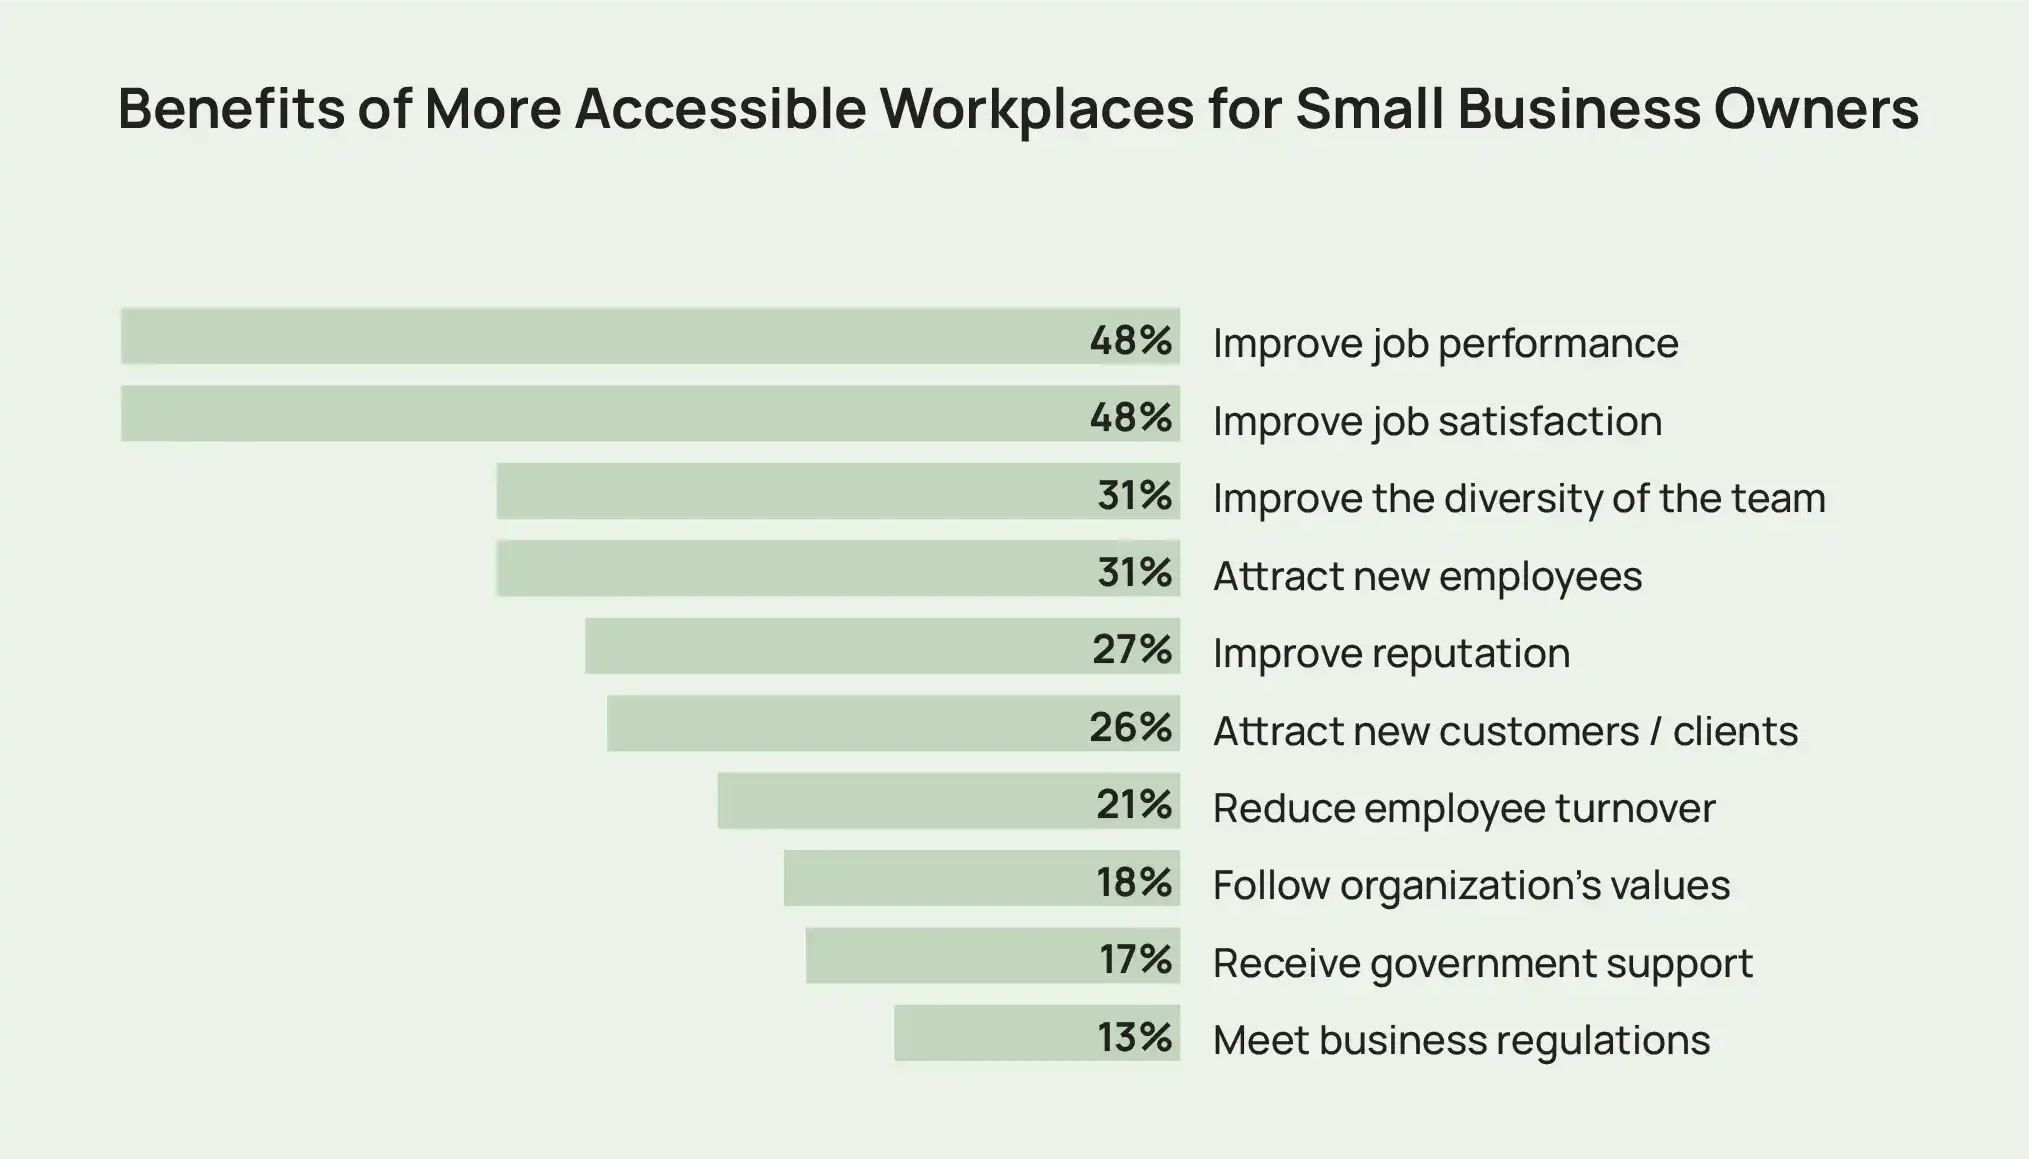 仕事のパフォーマンスや満足度の向上など、中小企業の経営者にとって職場がよりアクセスしやすくなるメリットの例を示す棒グラフ。